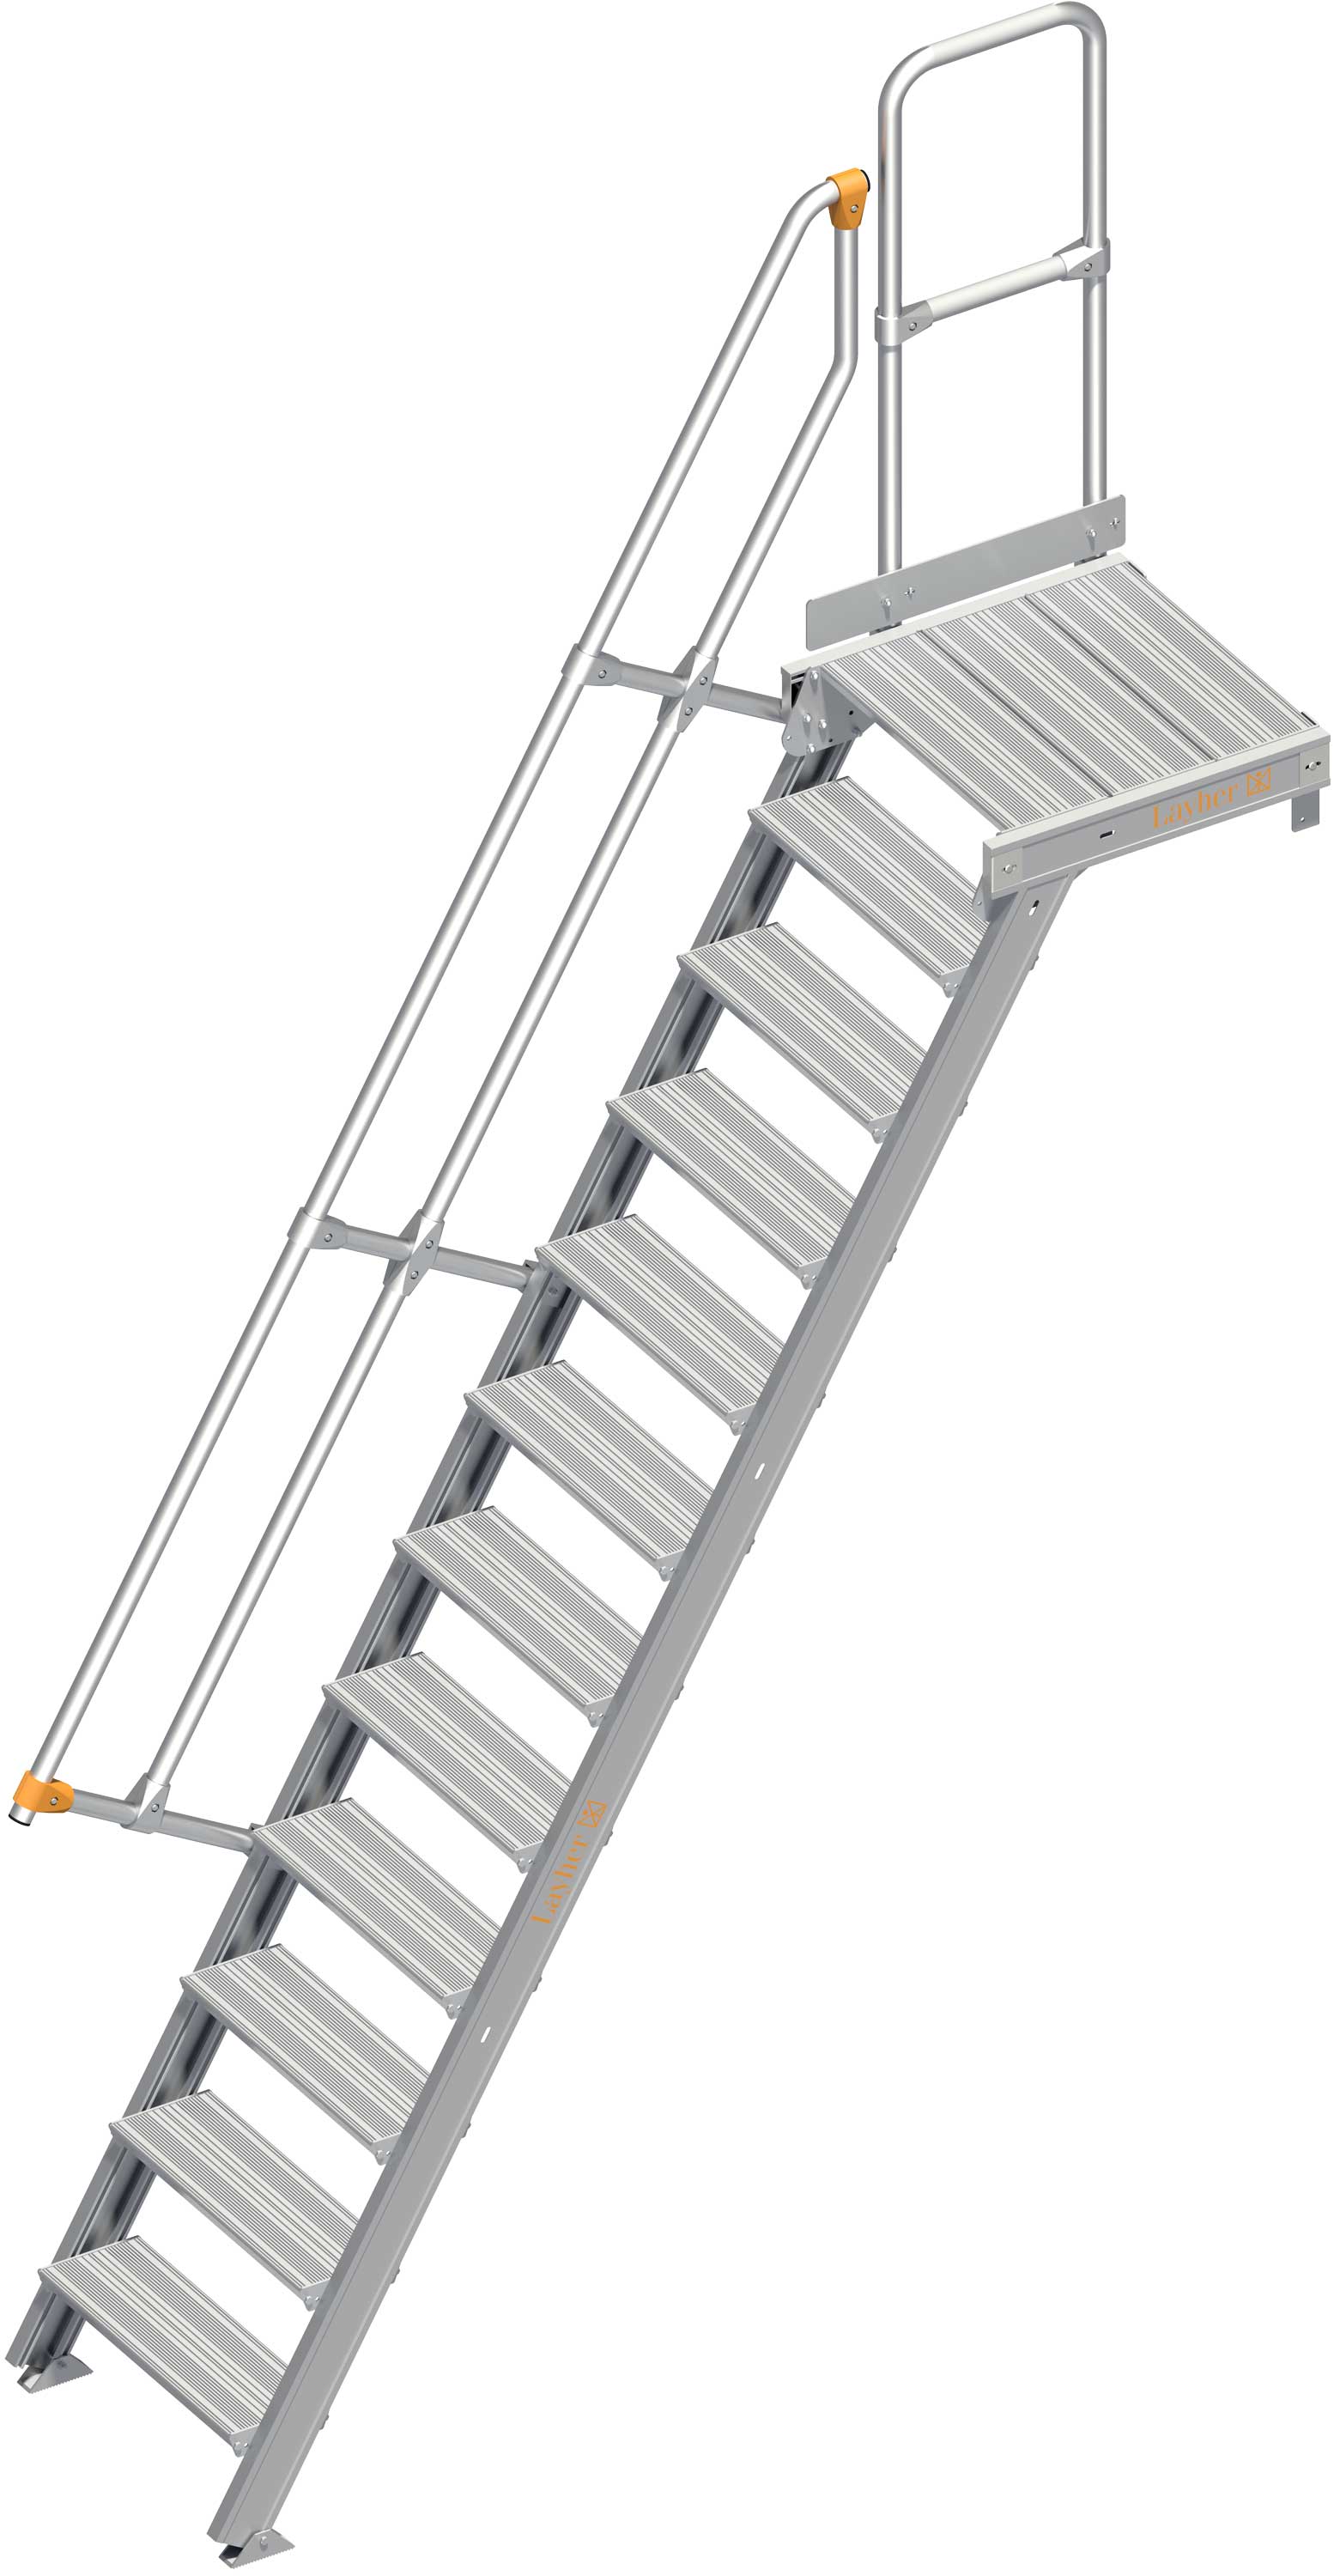 Layher Plattformtreppe 60° SG 12 Stufen - 600 mm breit